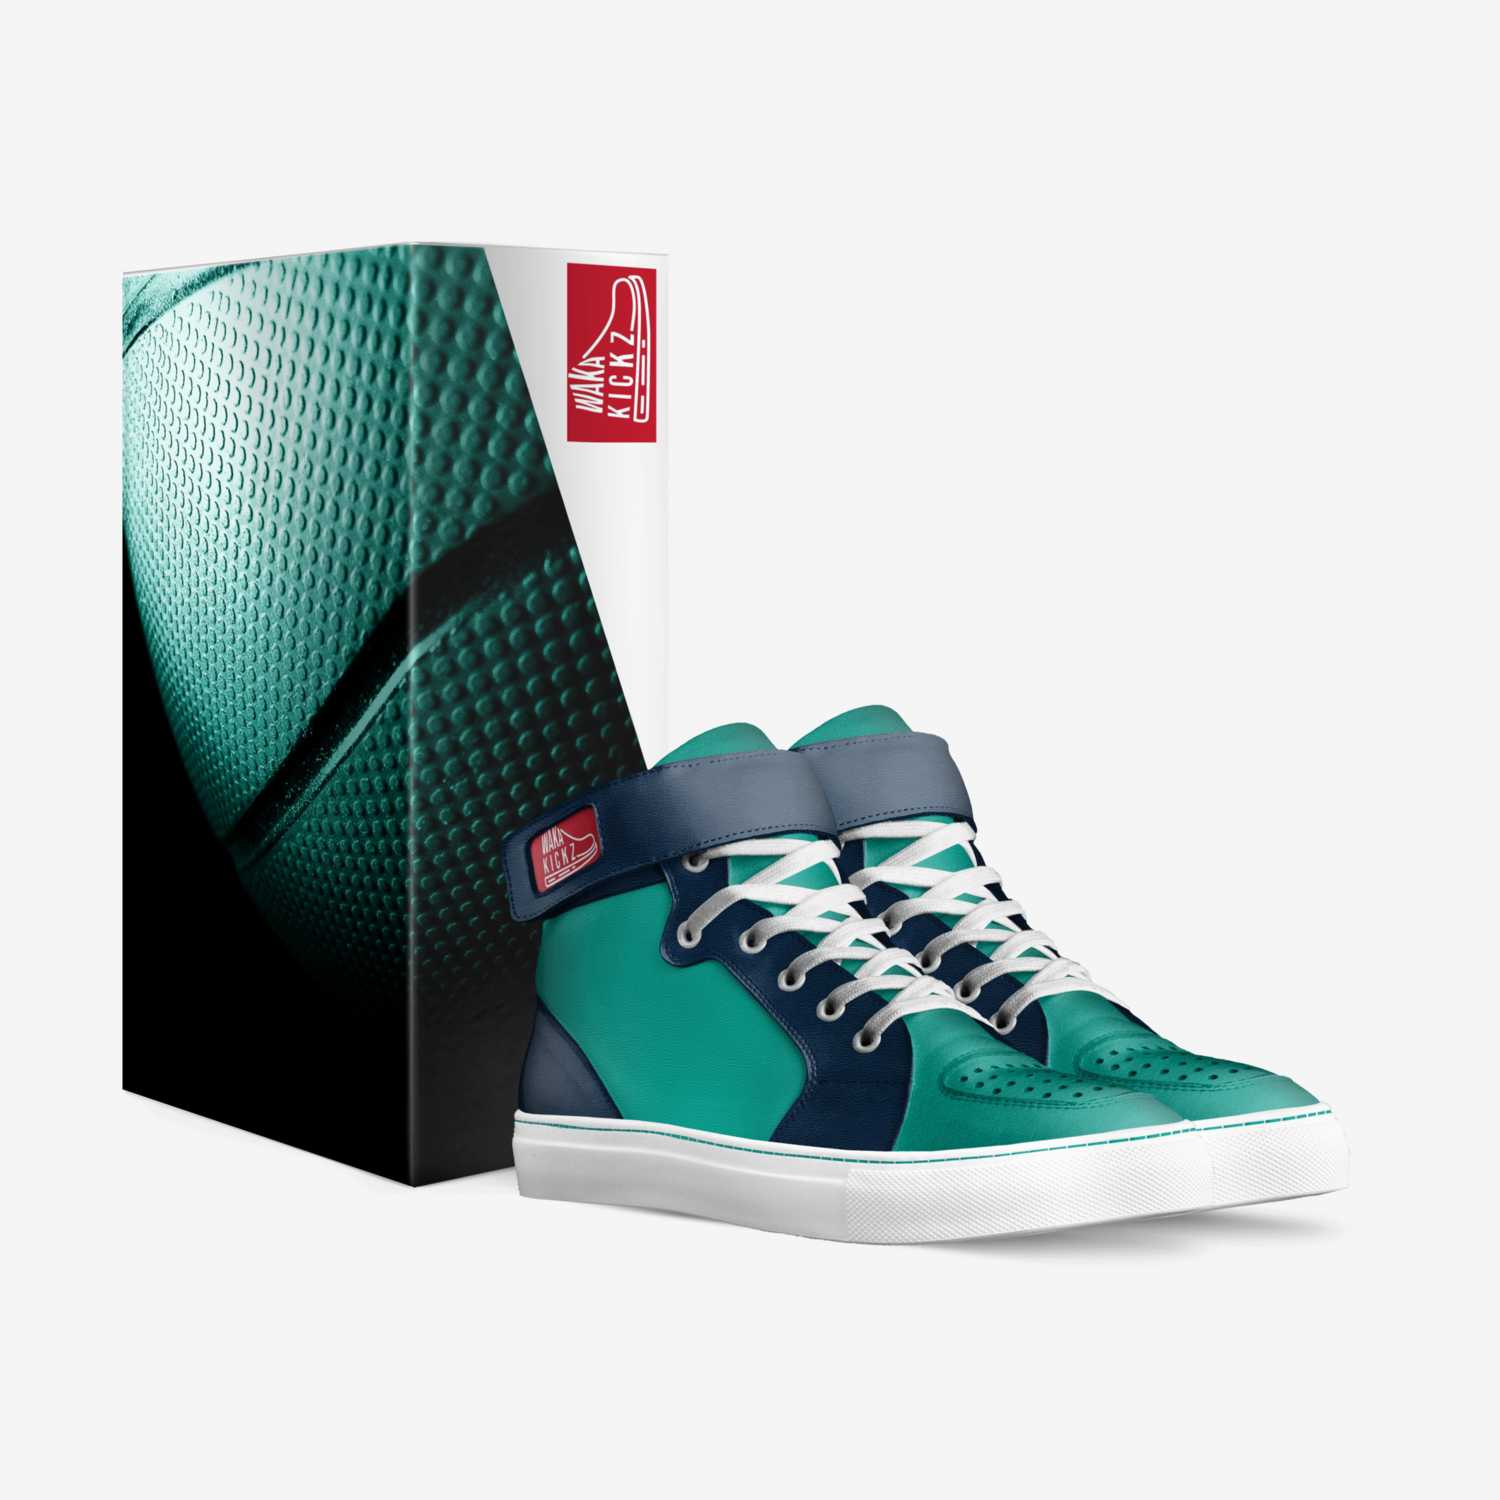 WakaKickz custom made in Italy shoes by Tunde Olanipekun | Box view